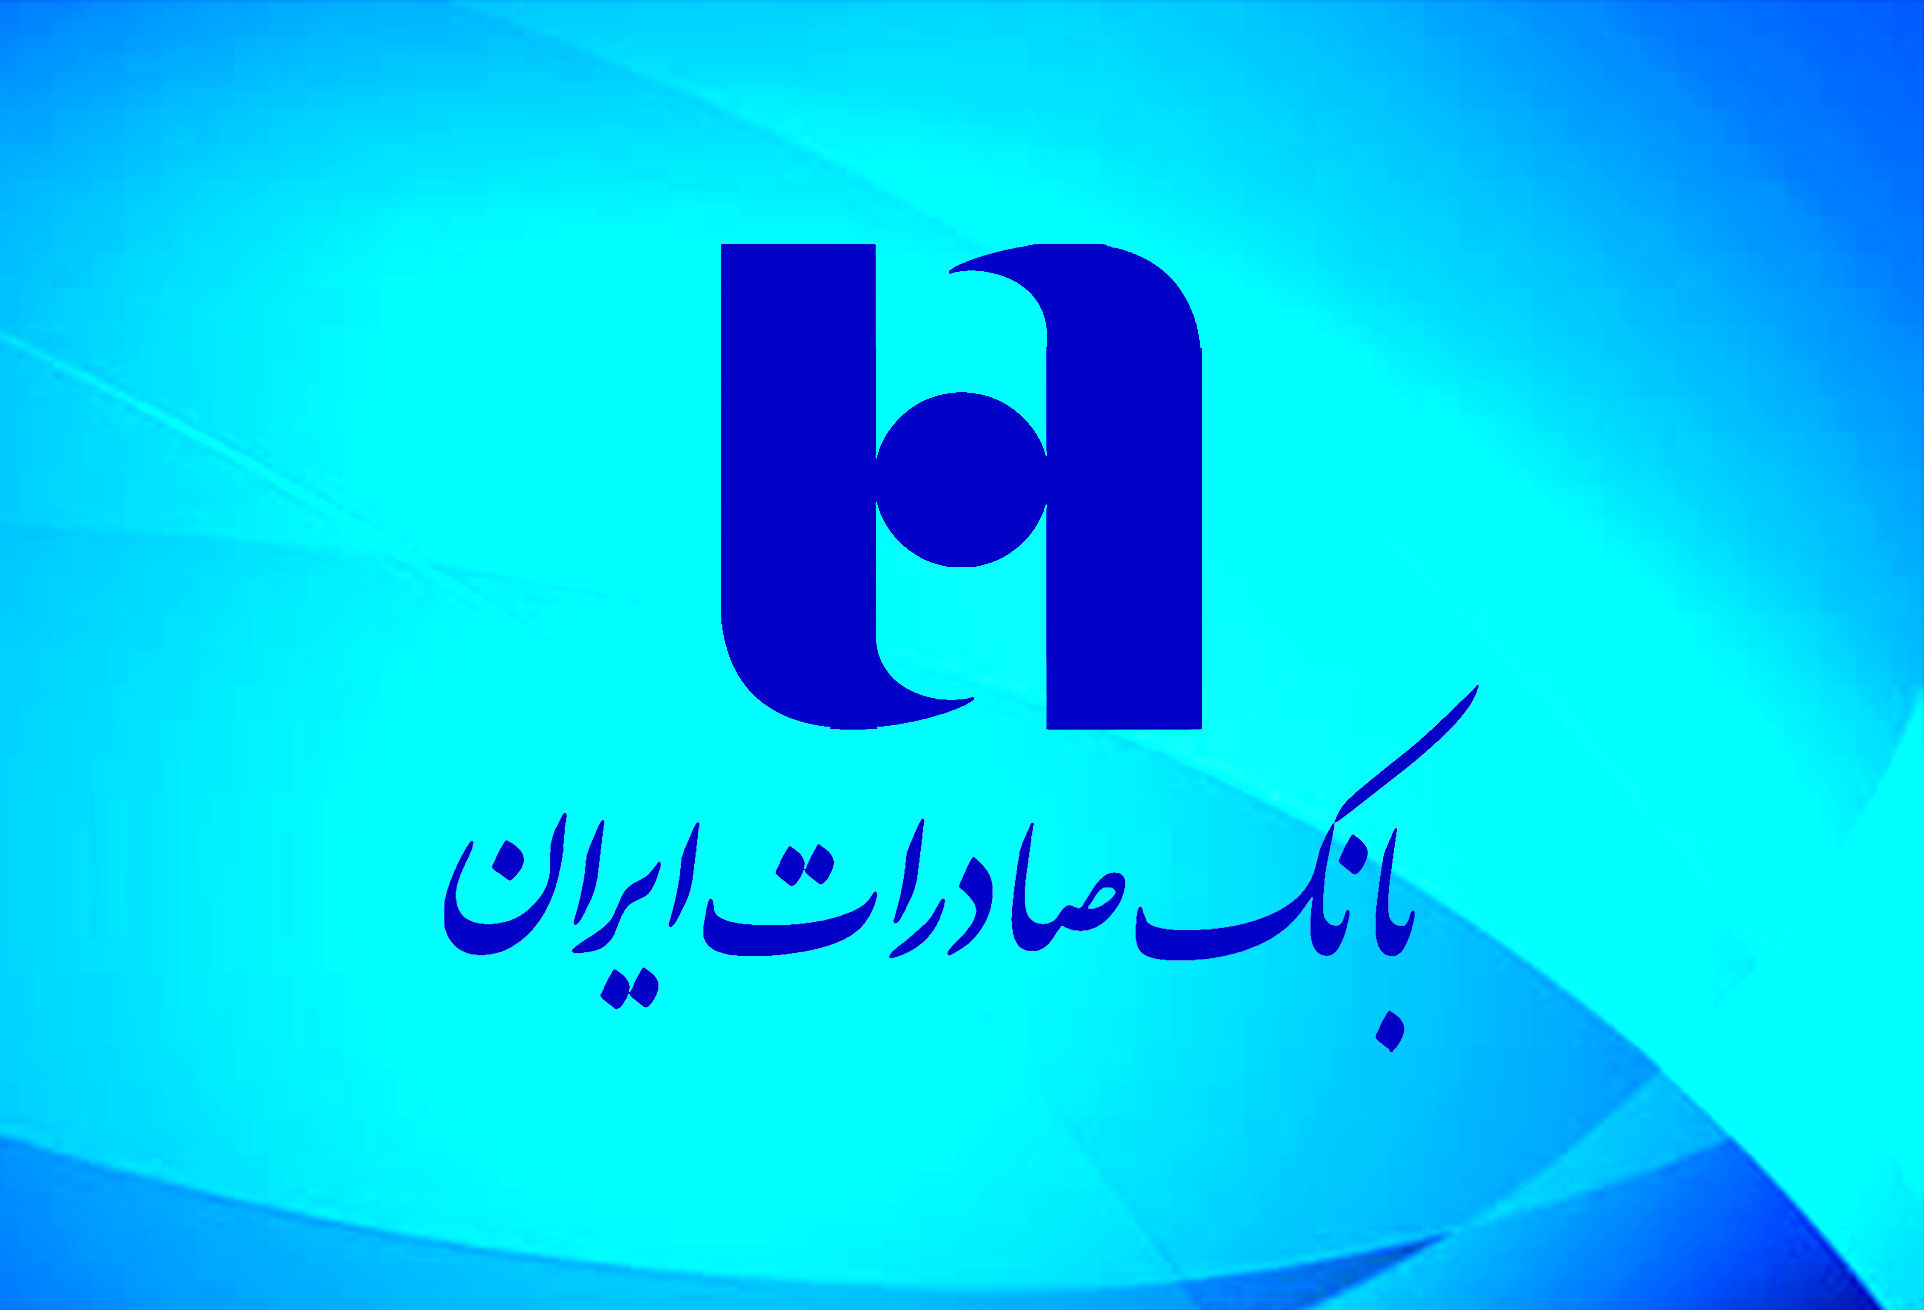 روند مثبت درآمد بانک صادرات ایران از کارمزد خدمات ارزی